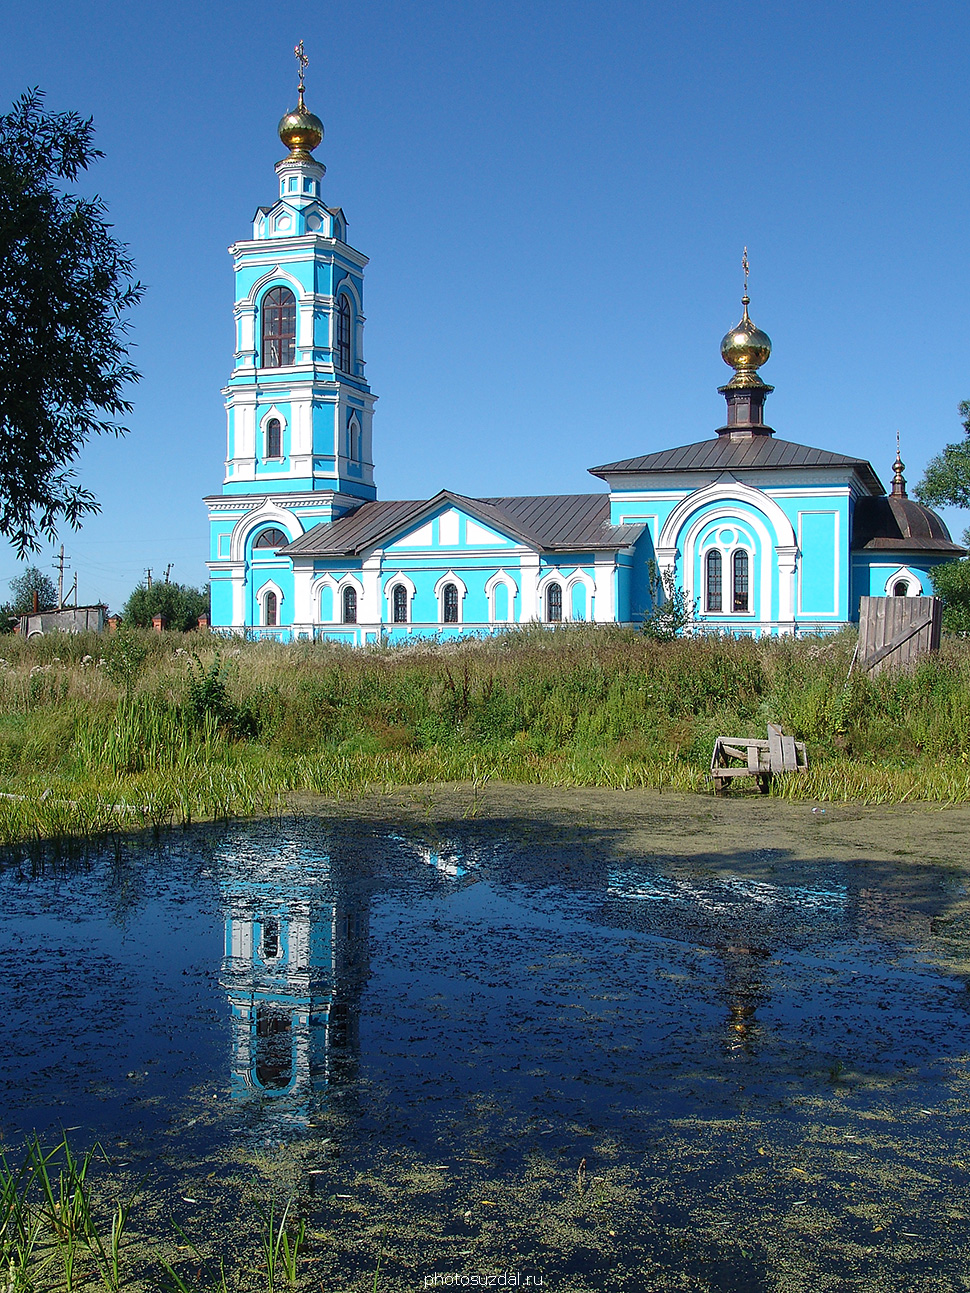 Борисоглебская церковь с колокольней в селе Ляховицы Суздальского района